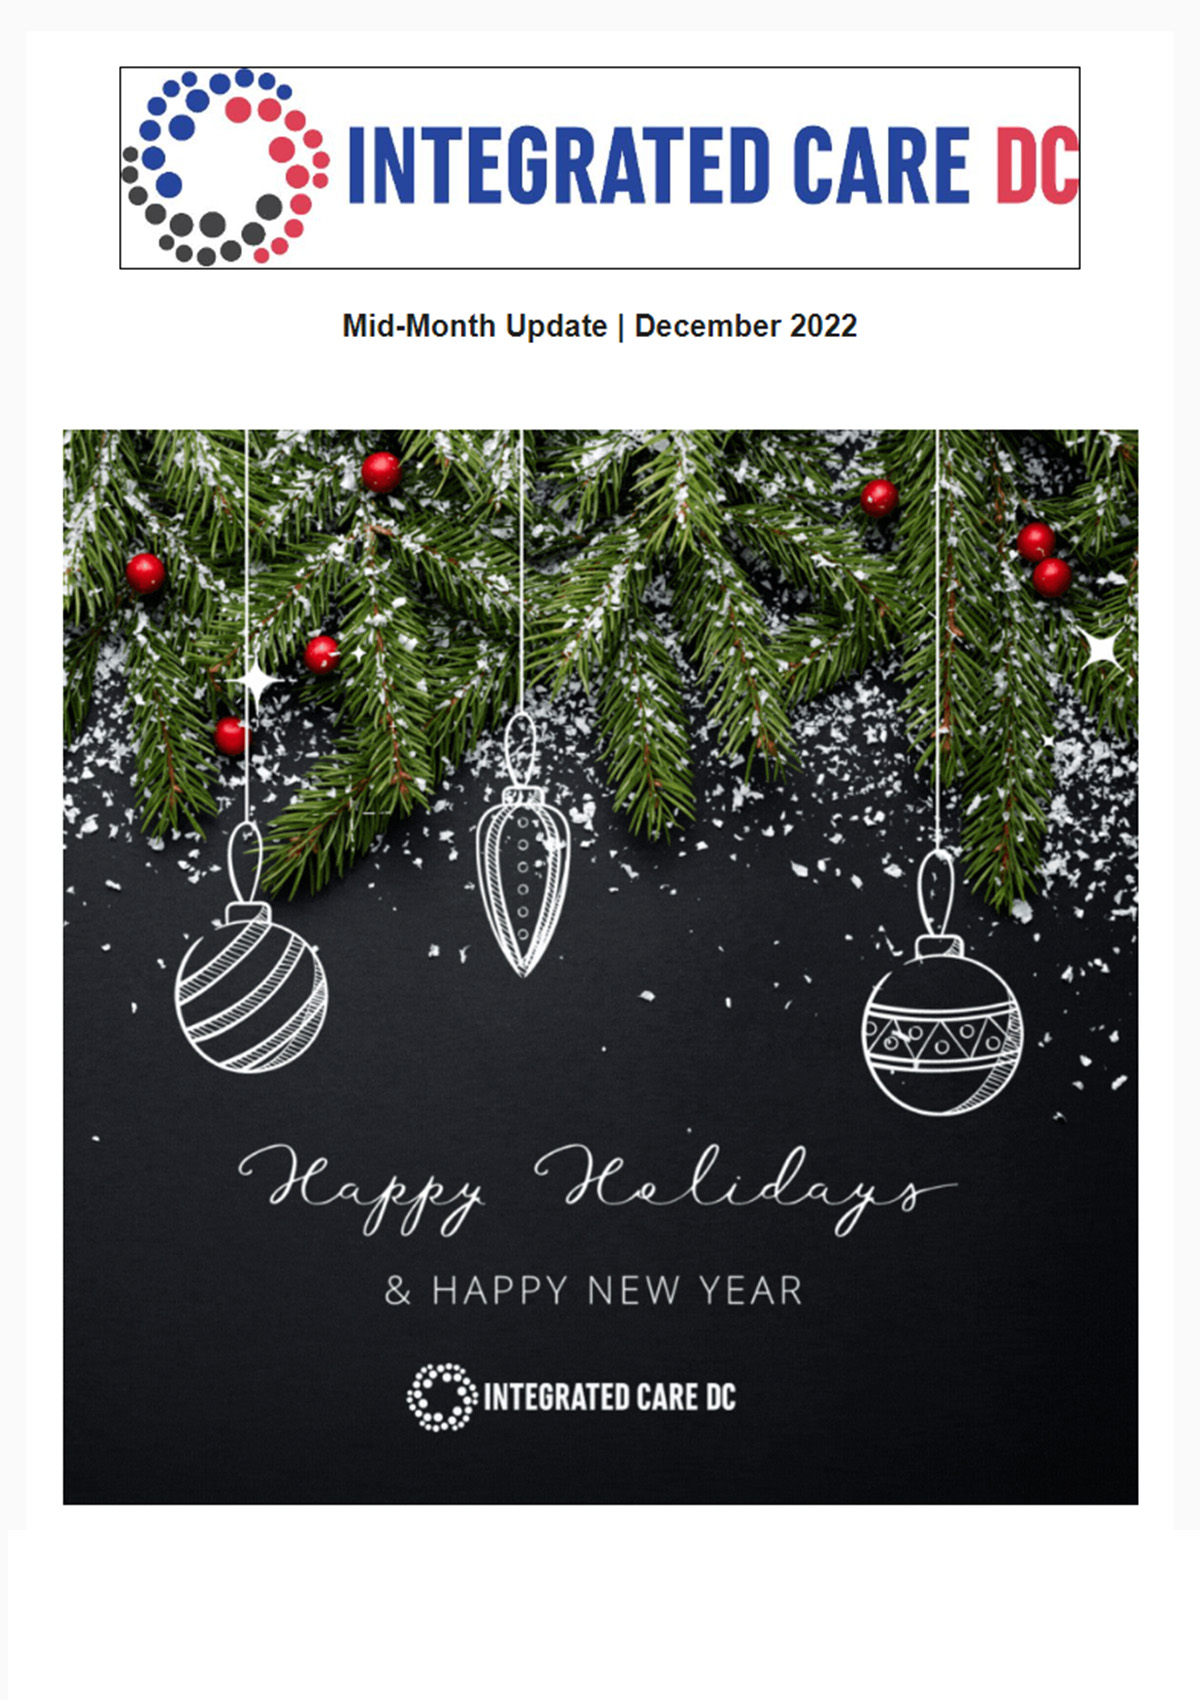 Integrated Care DC December Newsletter Image